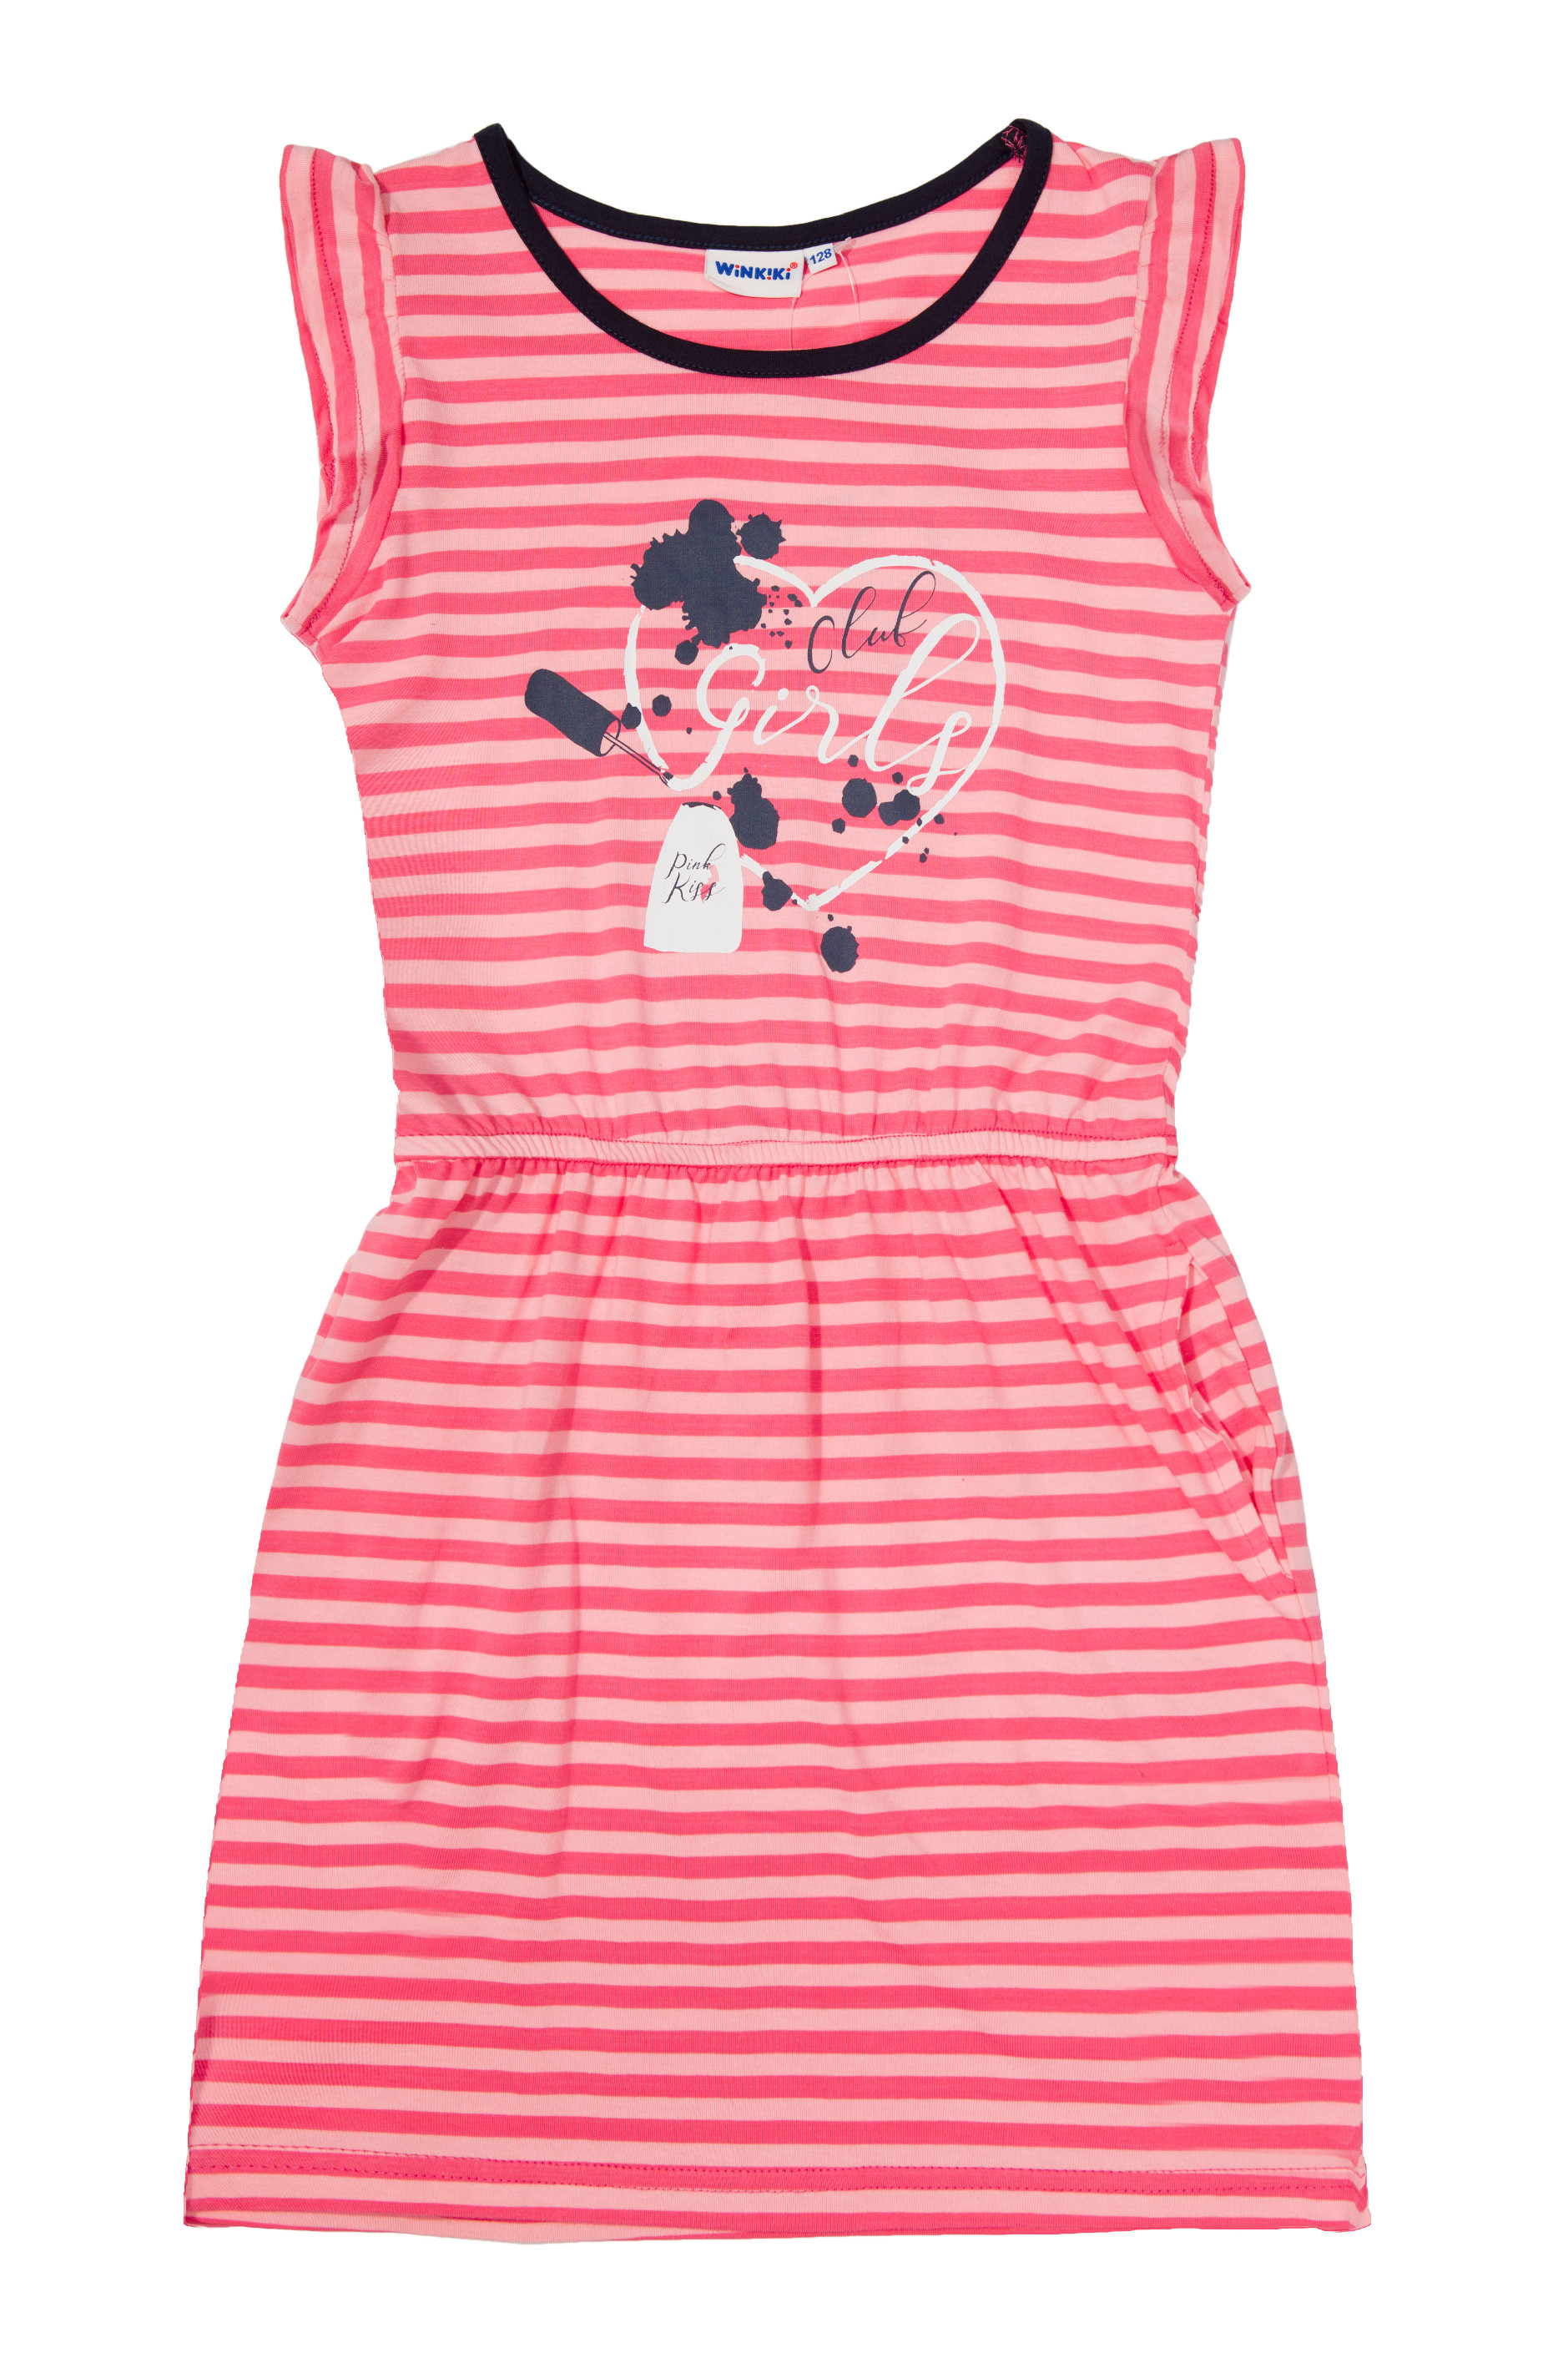 Dívčí šaty - WINKIKI WJG 01741, růžová Barva: Růžová, Velikost: 146